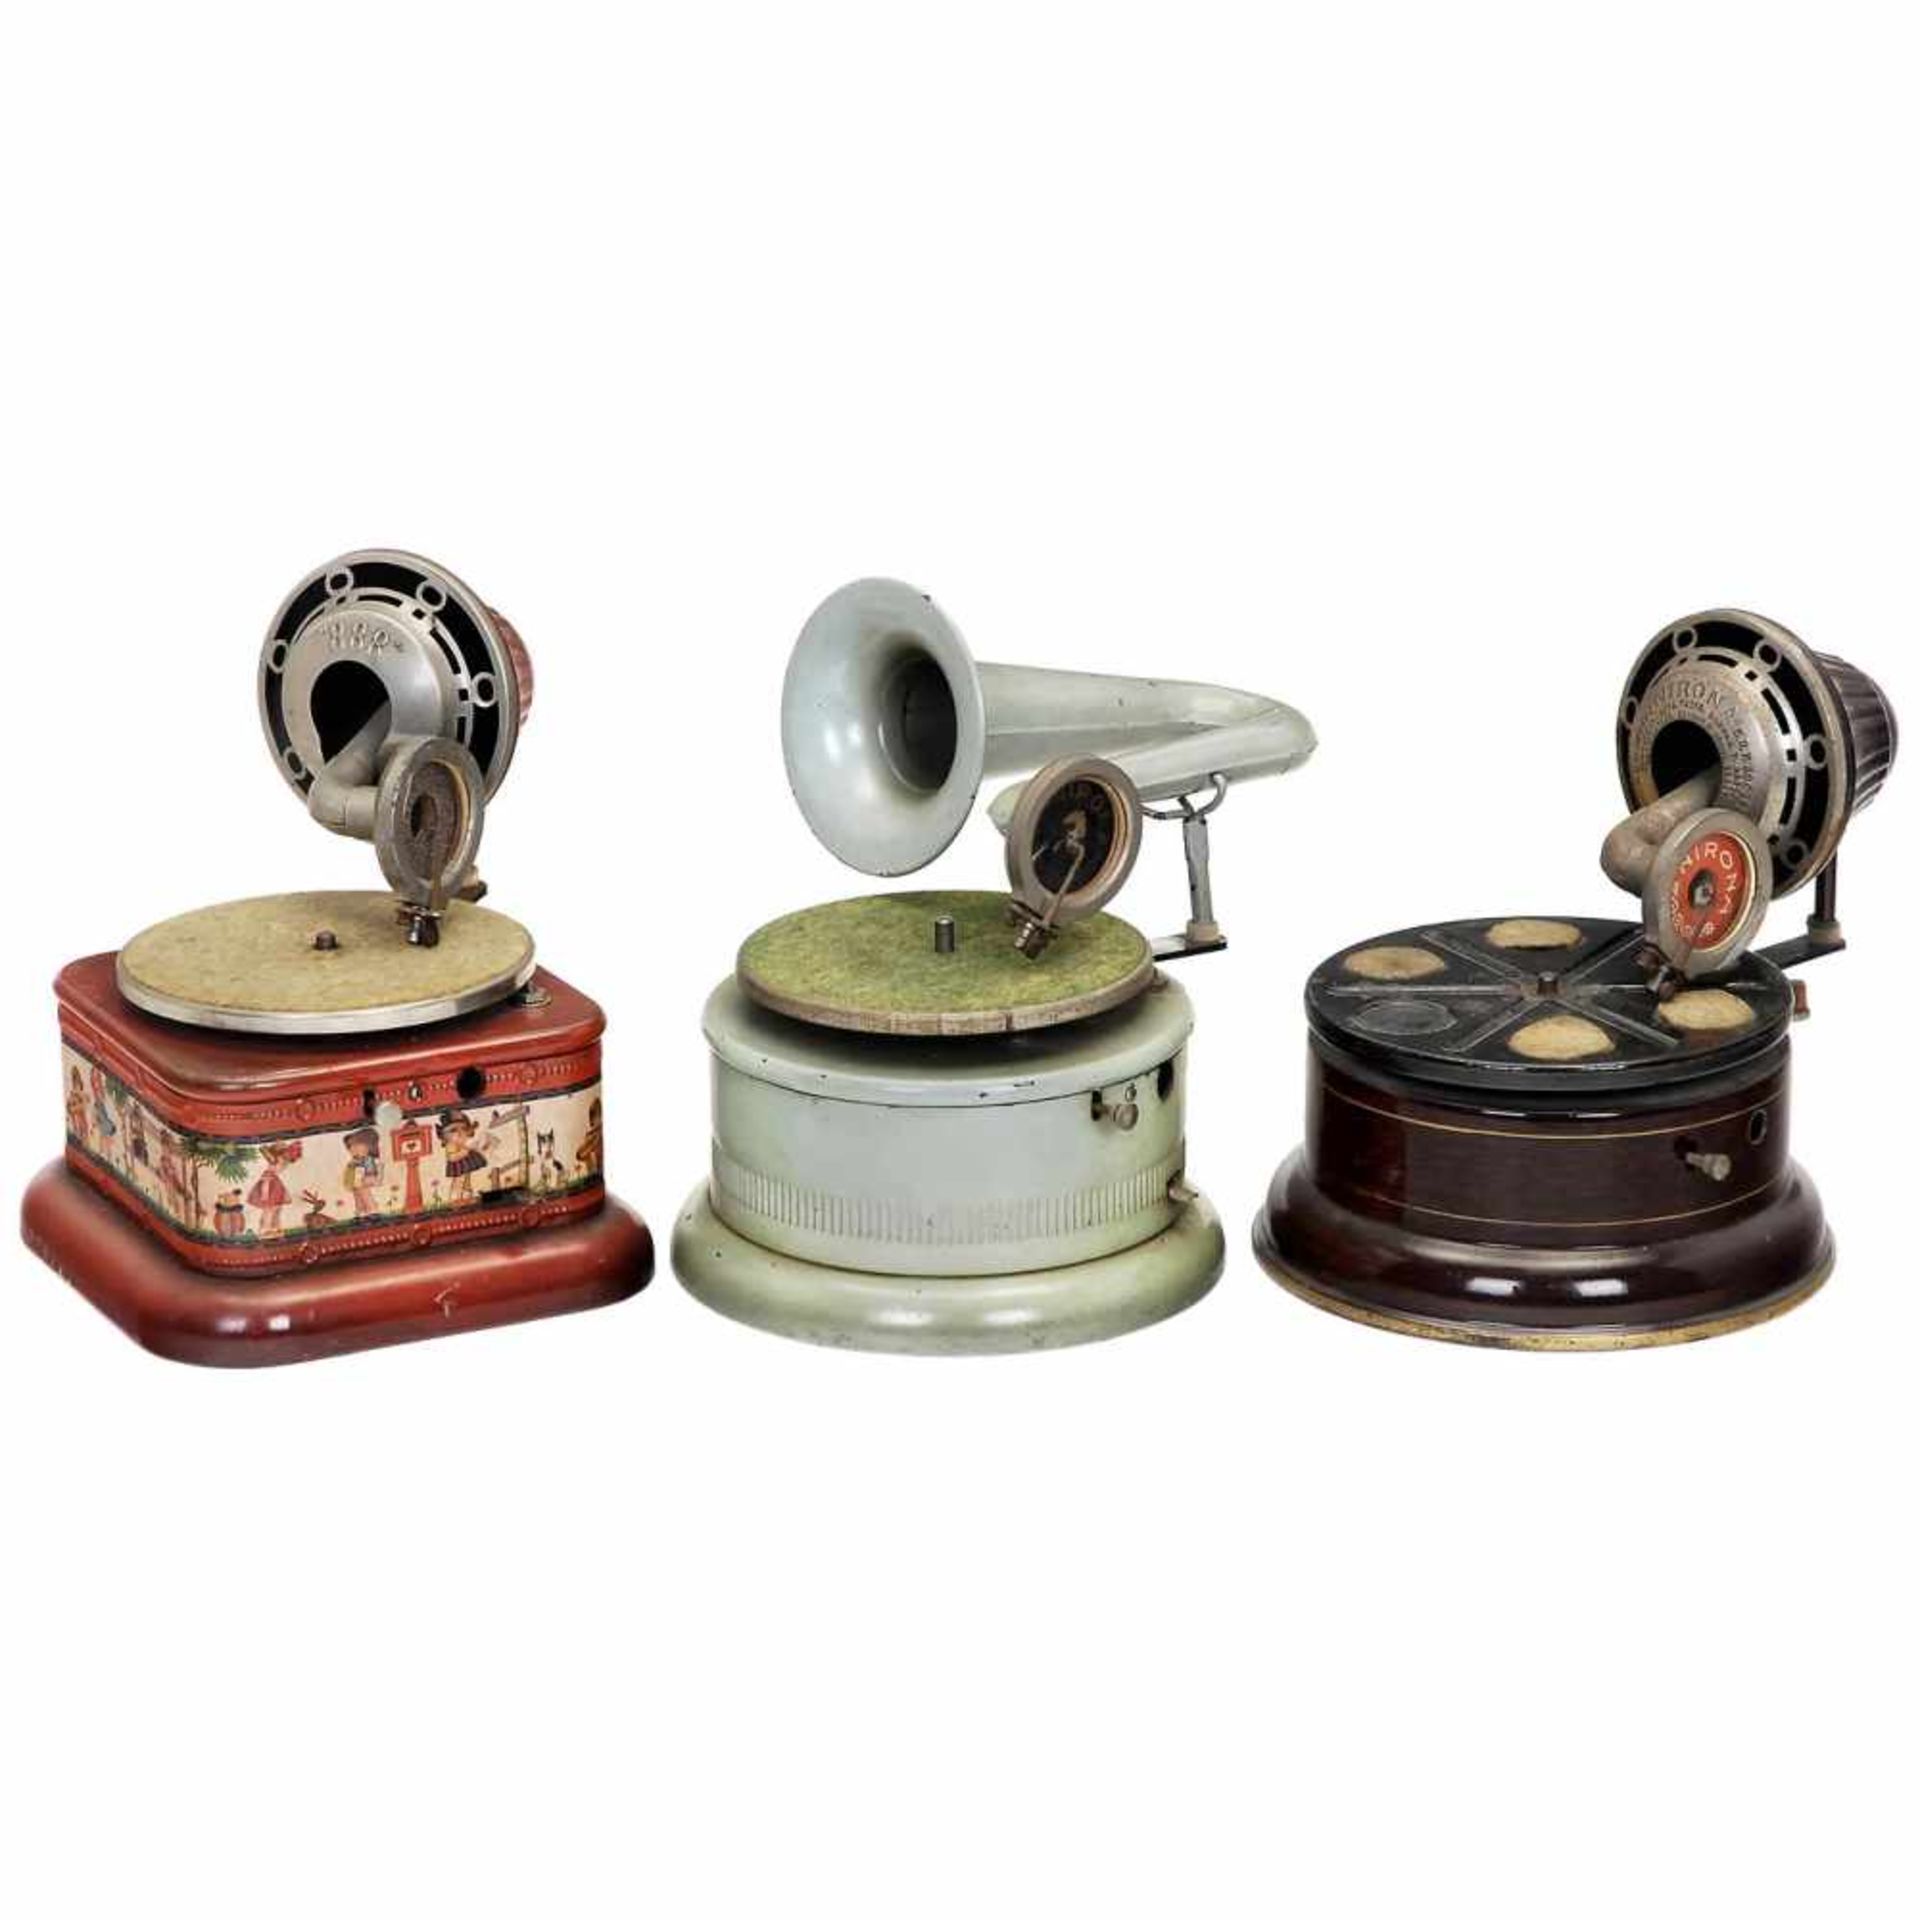 3 Nirona Toy Gramophones, c. 1930German gramophones by Nirona-Werke Nier & Ehmer, Beierfeld.